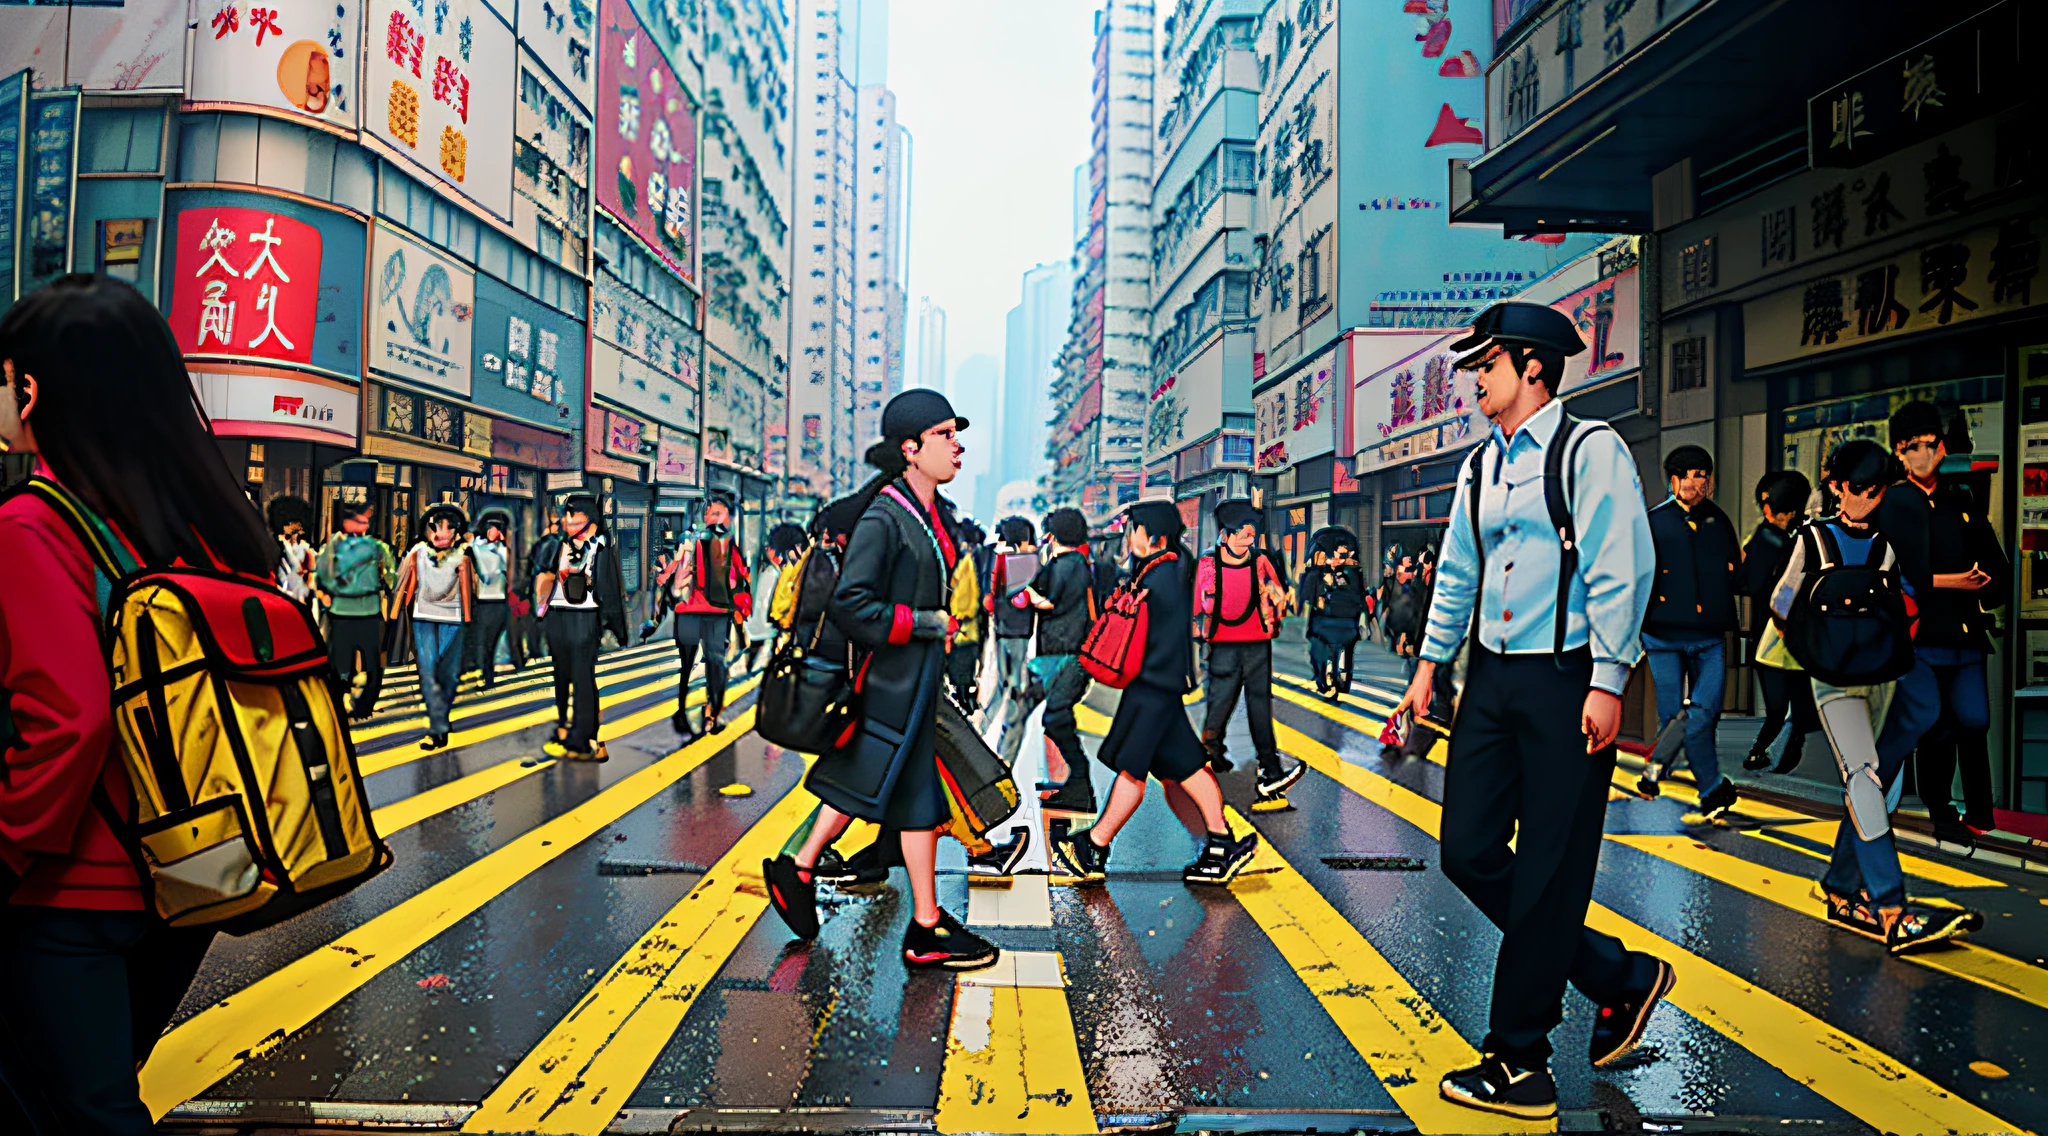 personas caminando por un paso de peatones en una calle concurrida de la ciudad, Gente caminando por una calle, calles de hong kong, Gente caminando por la calle, Calle ocupadas, Gente caminando por la calle, viajeros caminando por las calles, Calle ocupadas filled with people, Calle de Hong Kong, Calle ocupada, calle llena de gente, calle llena de gentes, Gente en las calles, gente caminando alrededor, Gente en las calles